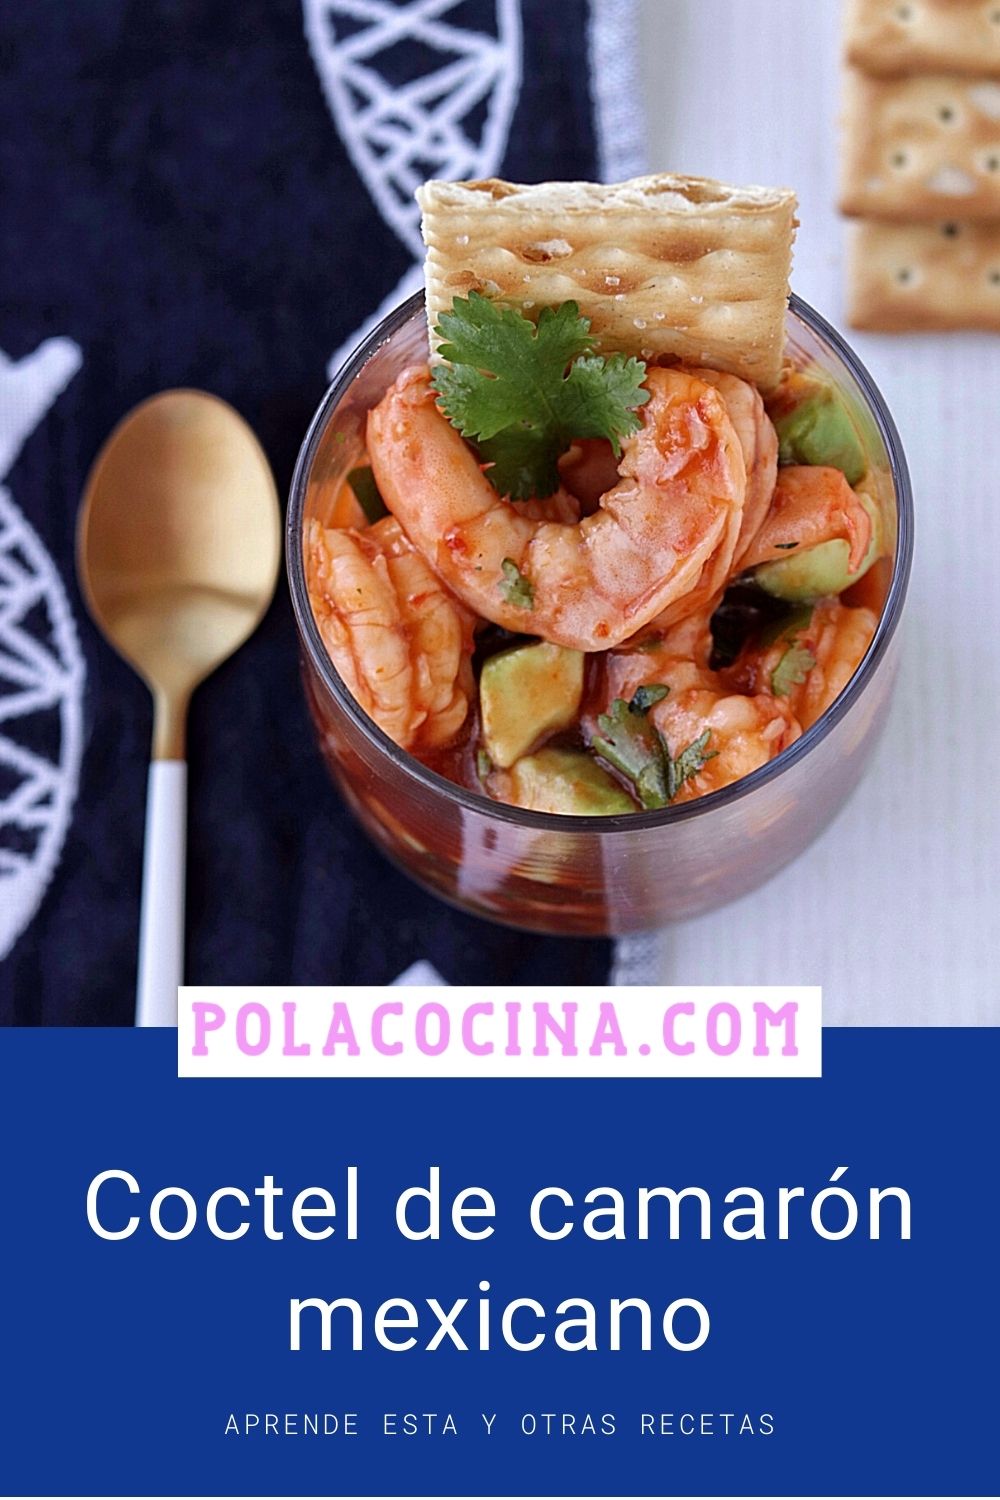 Coctel de camarón estilo Veracruz con refresco de naranja